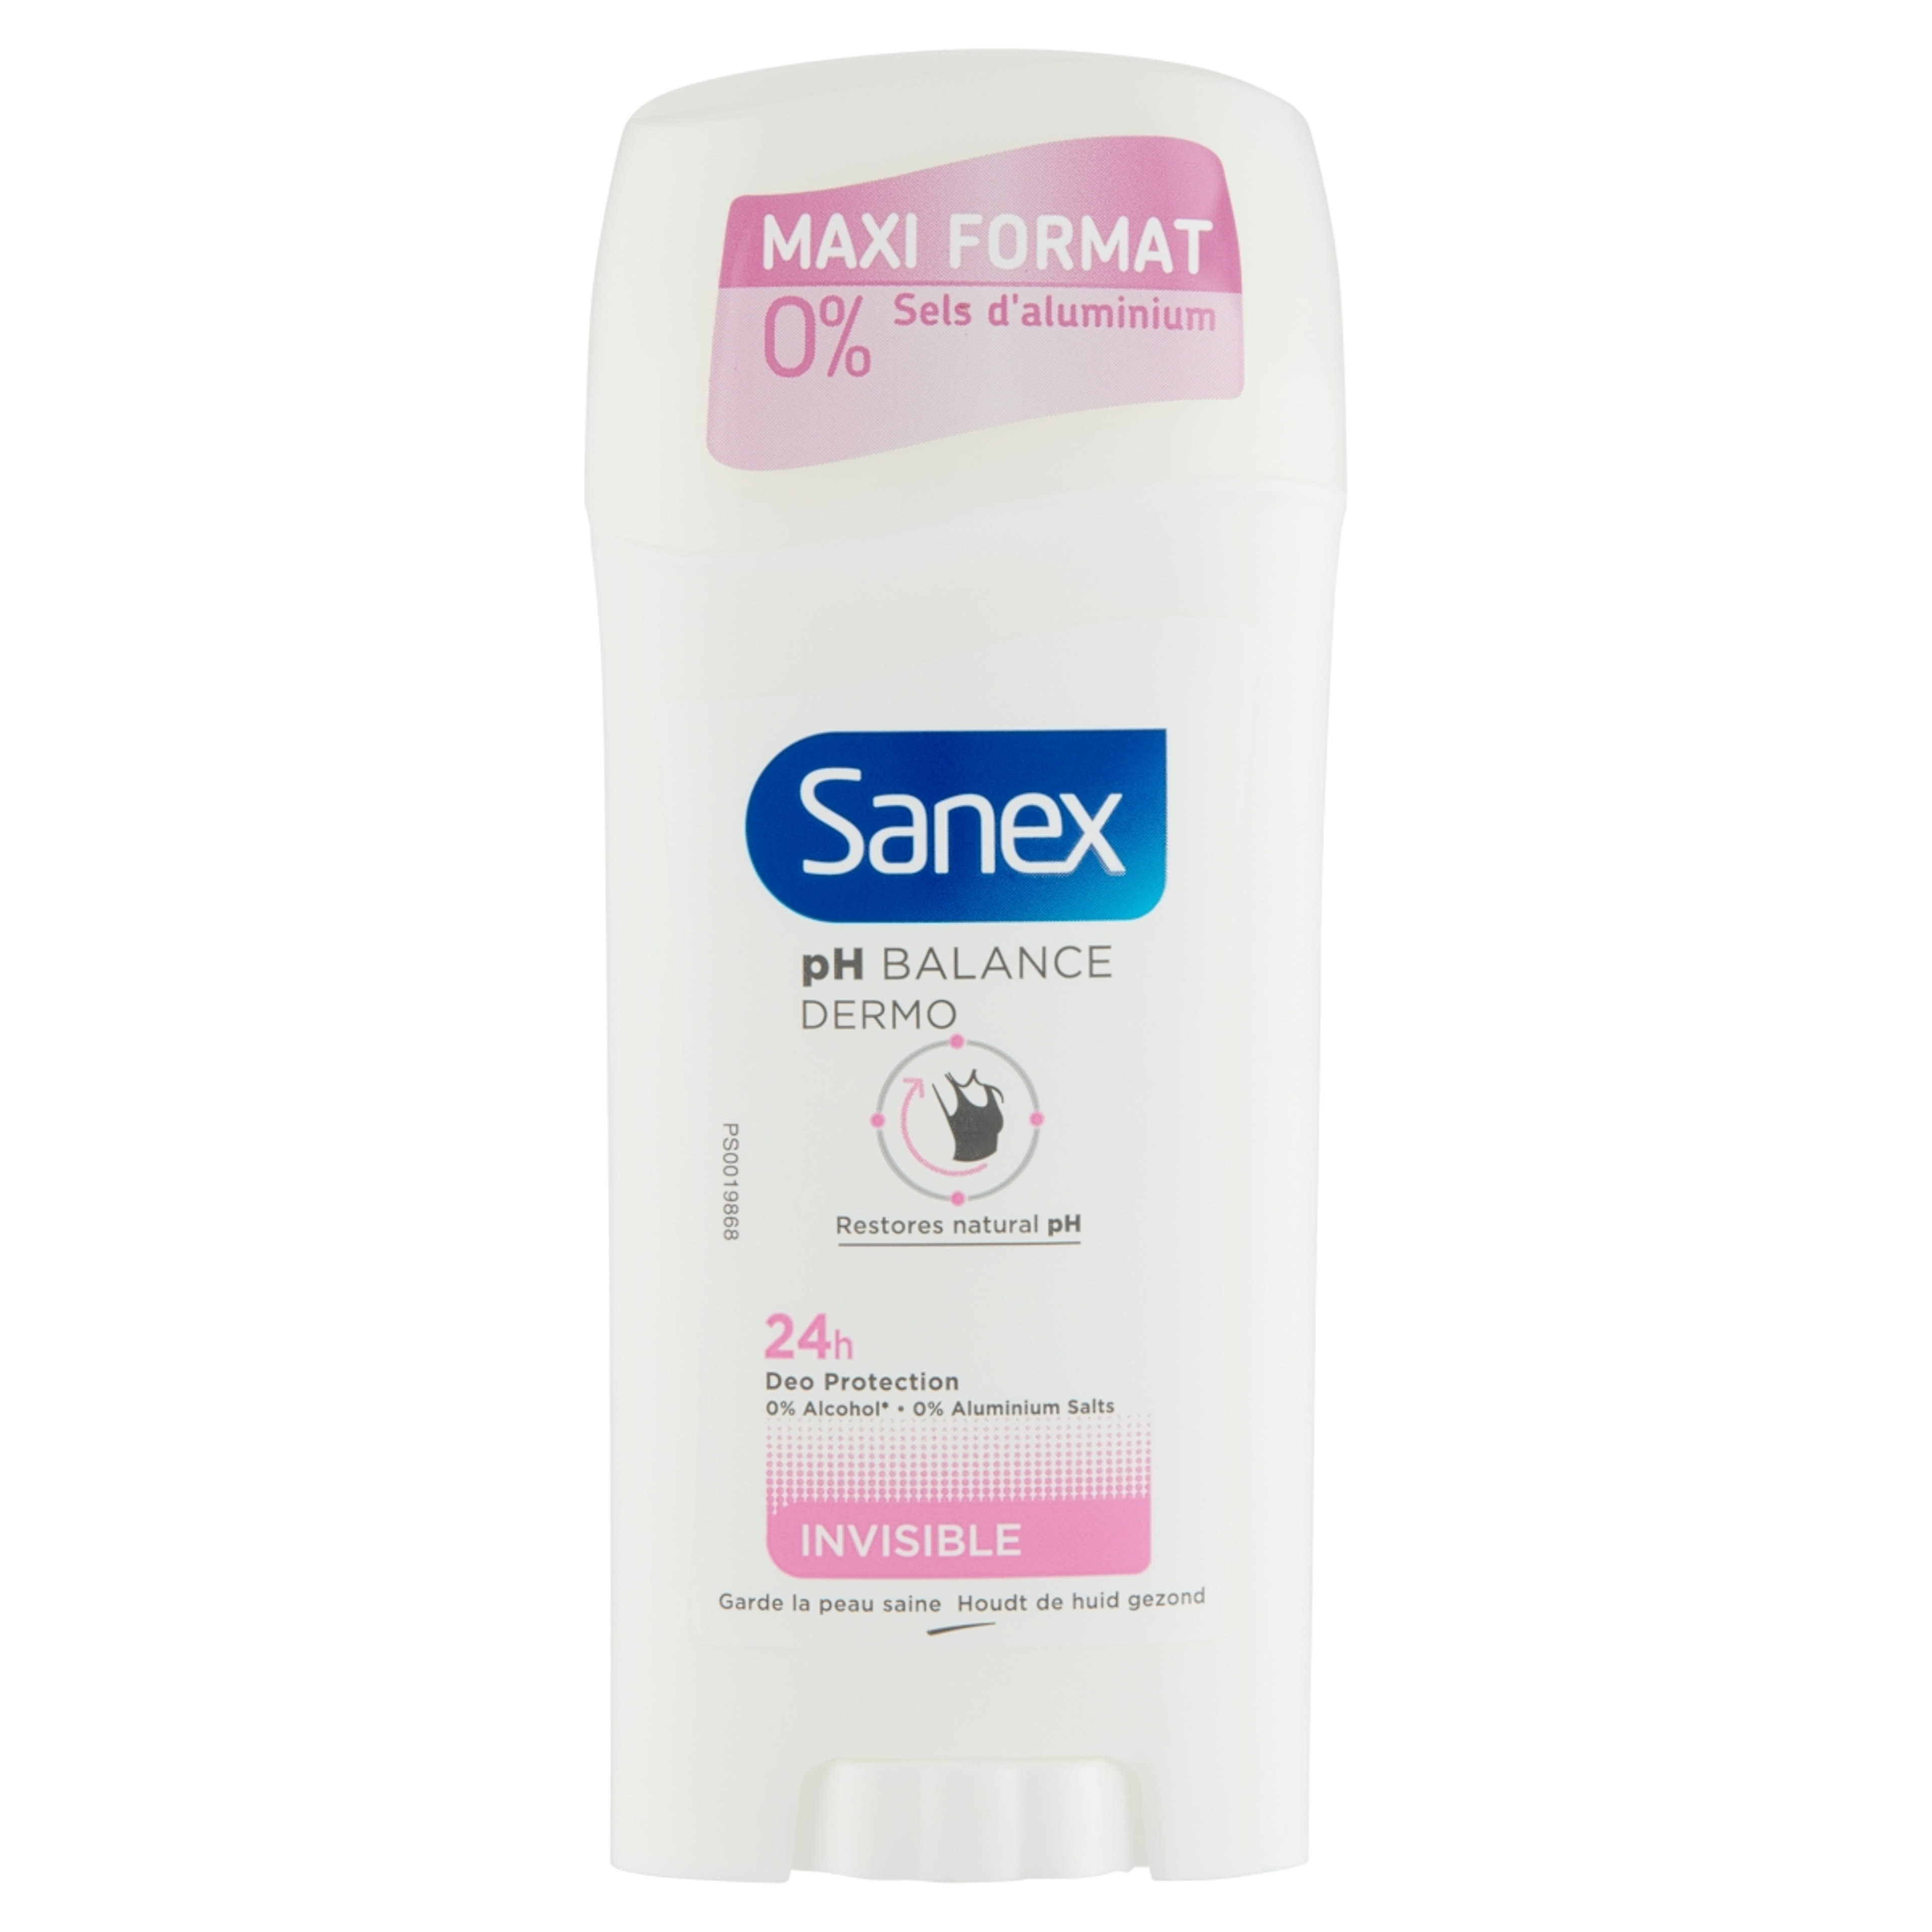 Sanex pH Balance Dermo Invisible dezodor stift - 65 ml